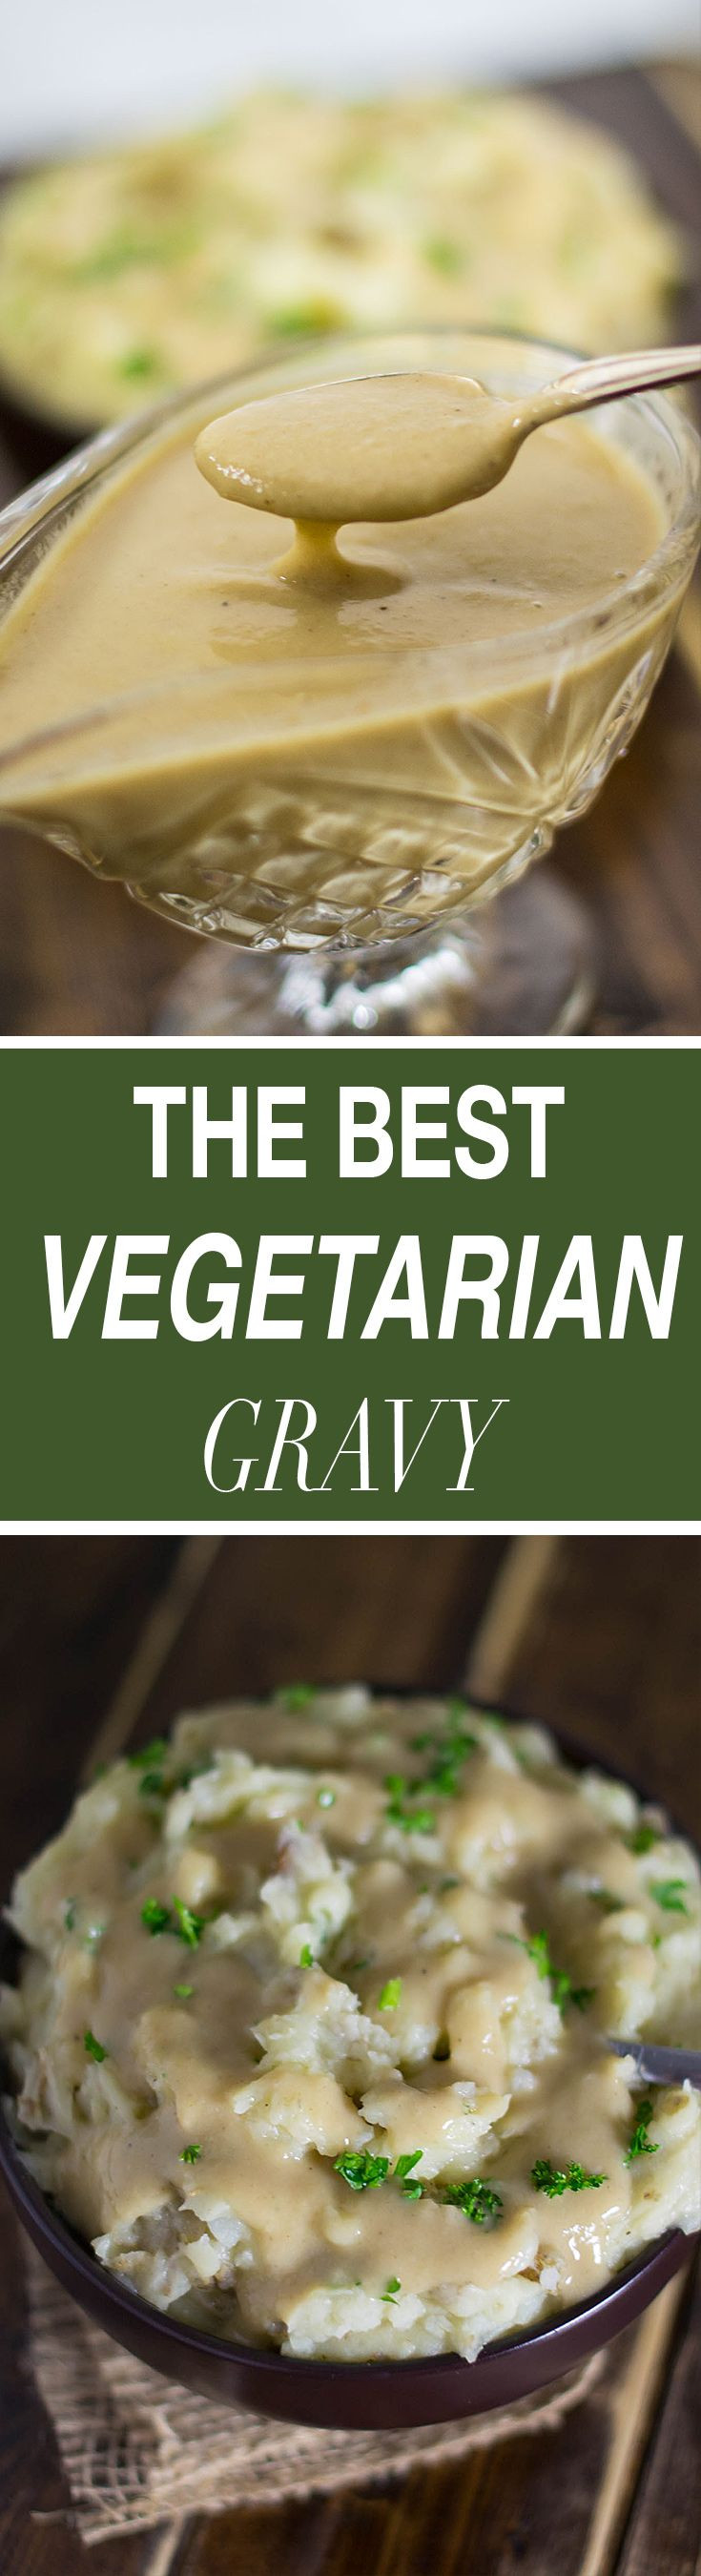 Vegetarian Thanksgiving Gravy
 Best 25 Ve arian jokes ideas only on Pinterest